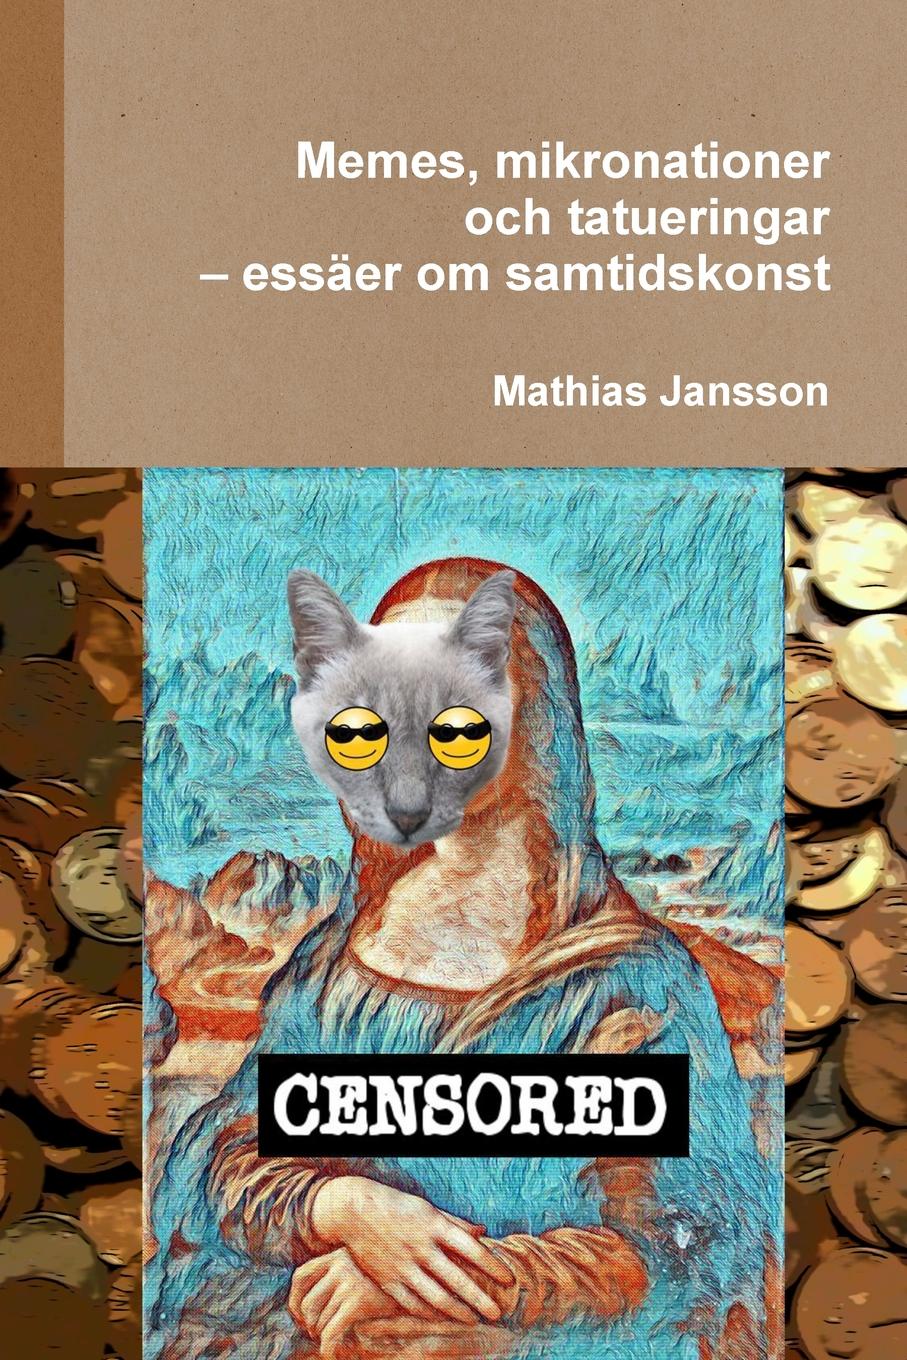 Mathias Jansson Memes, mikronationer och tatueringar - essaer om samtidskonst